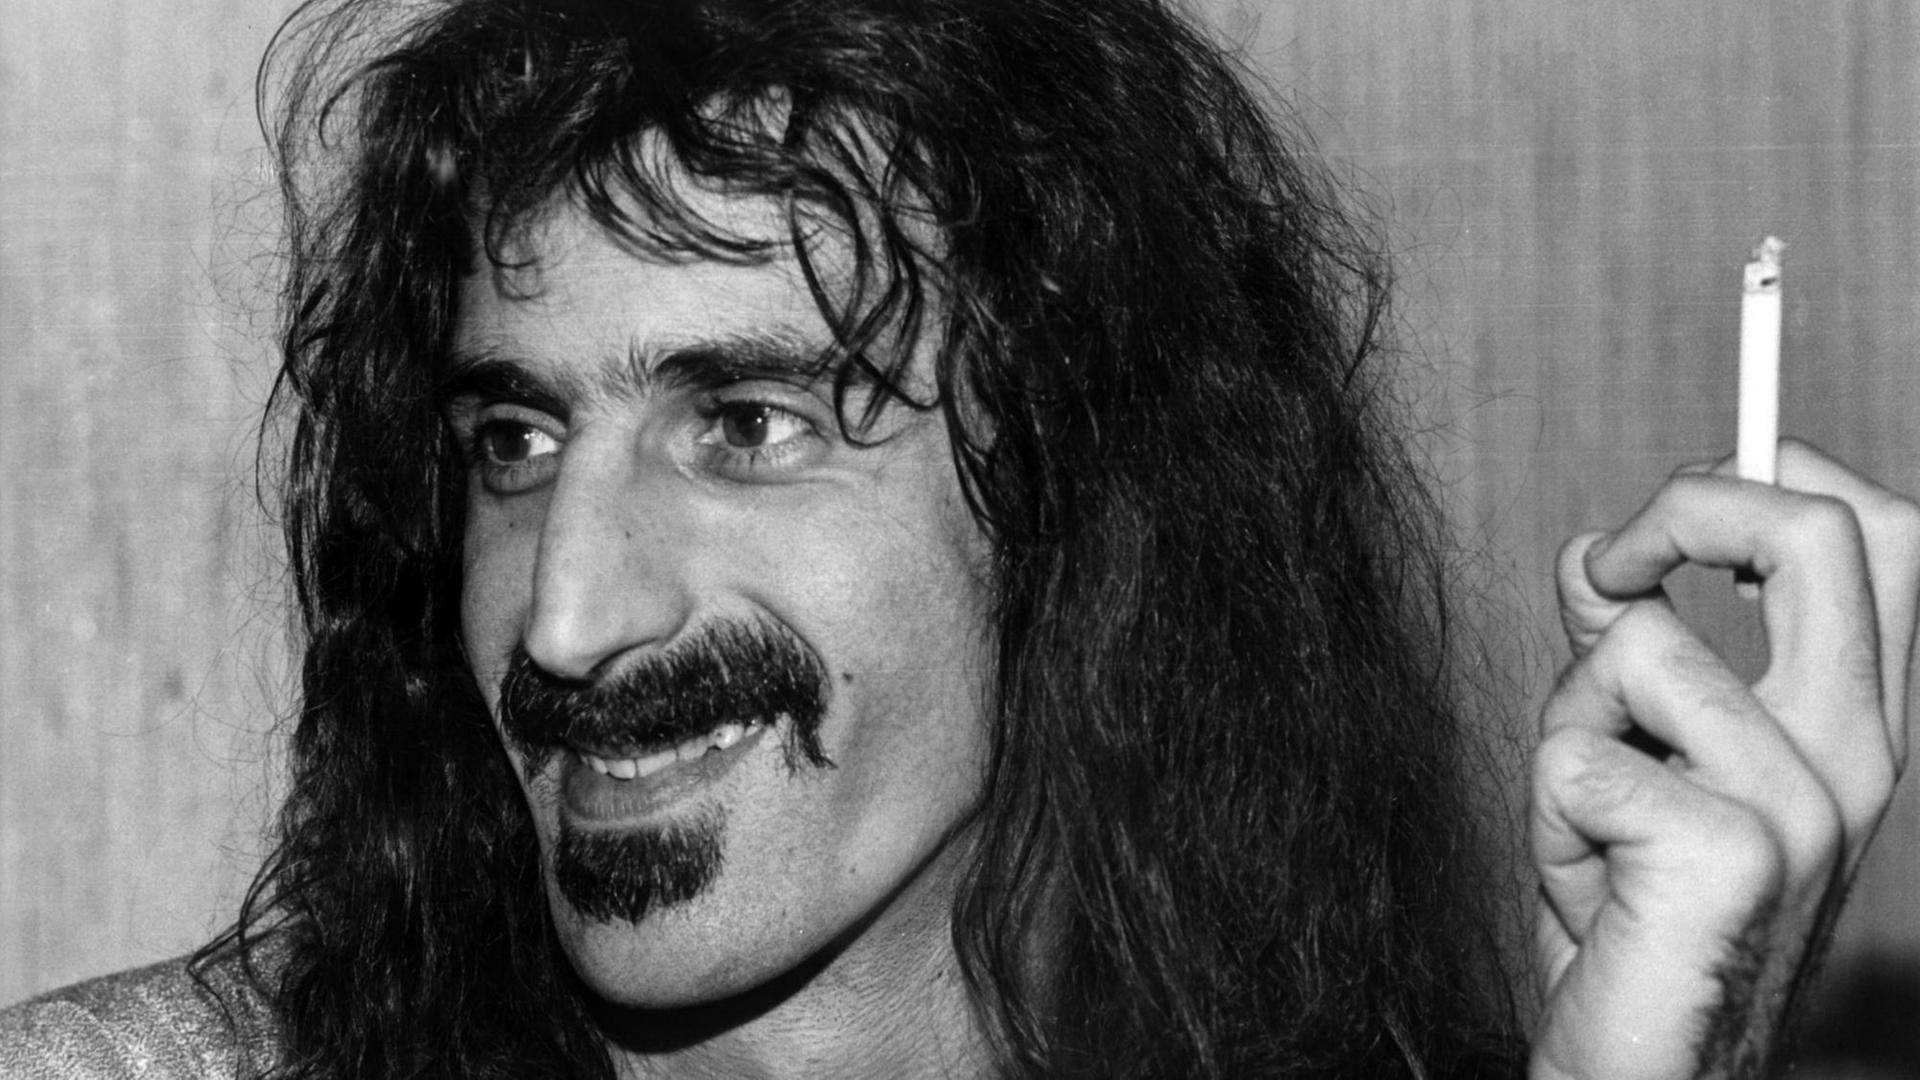 Der amerikanische Komponist und Rockmusiker Frank Zappa, Bandleader der Gruppe "Mother of Invention", aufgenommen in Oslo am 25.02.1976.